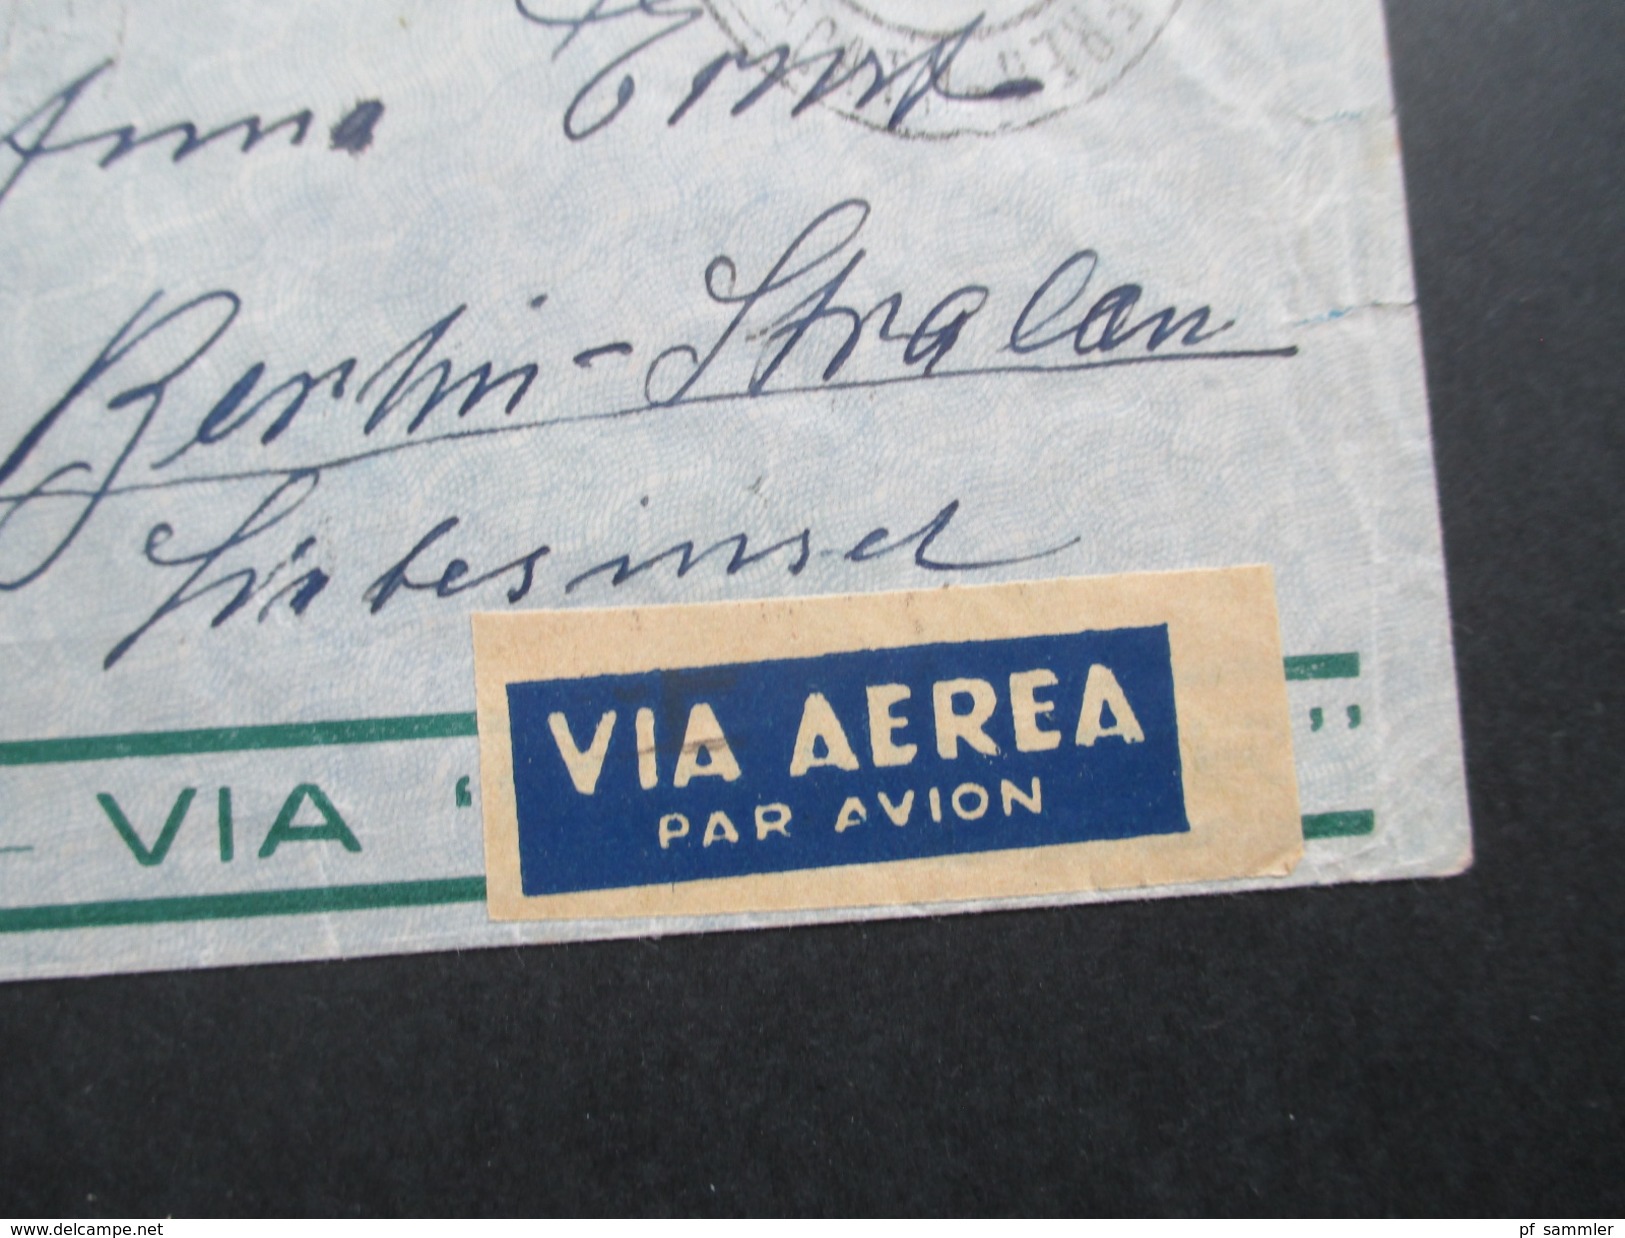 Brasilien 1935 Luftpost / Flugpost Via Condor. Nach Berlin über Paris R.P. Avion. Zeppelinpost?? - Cartas & Documentos